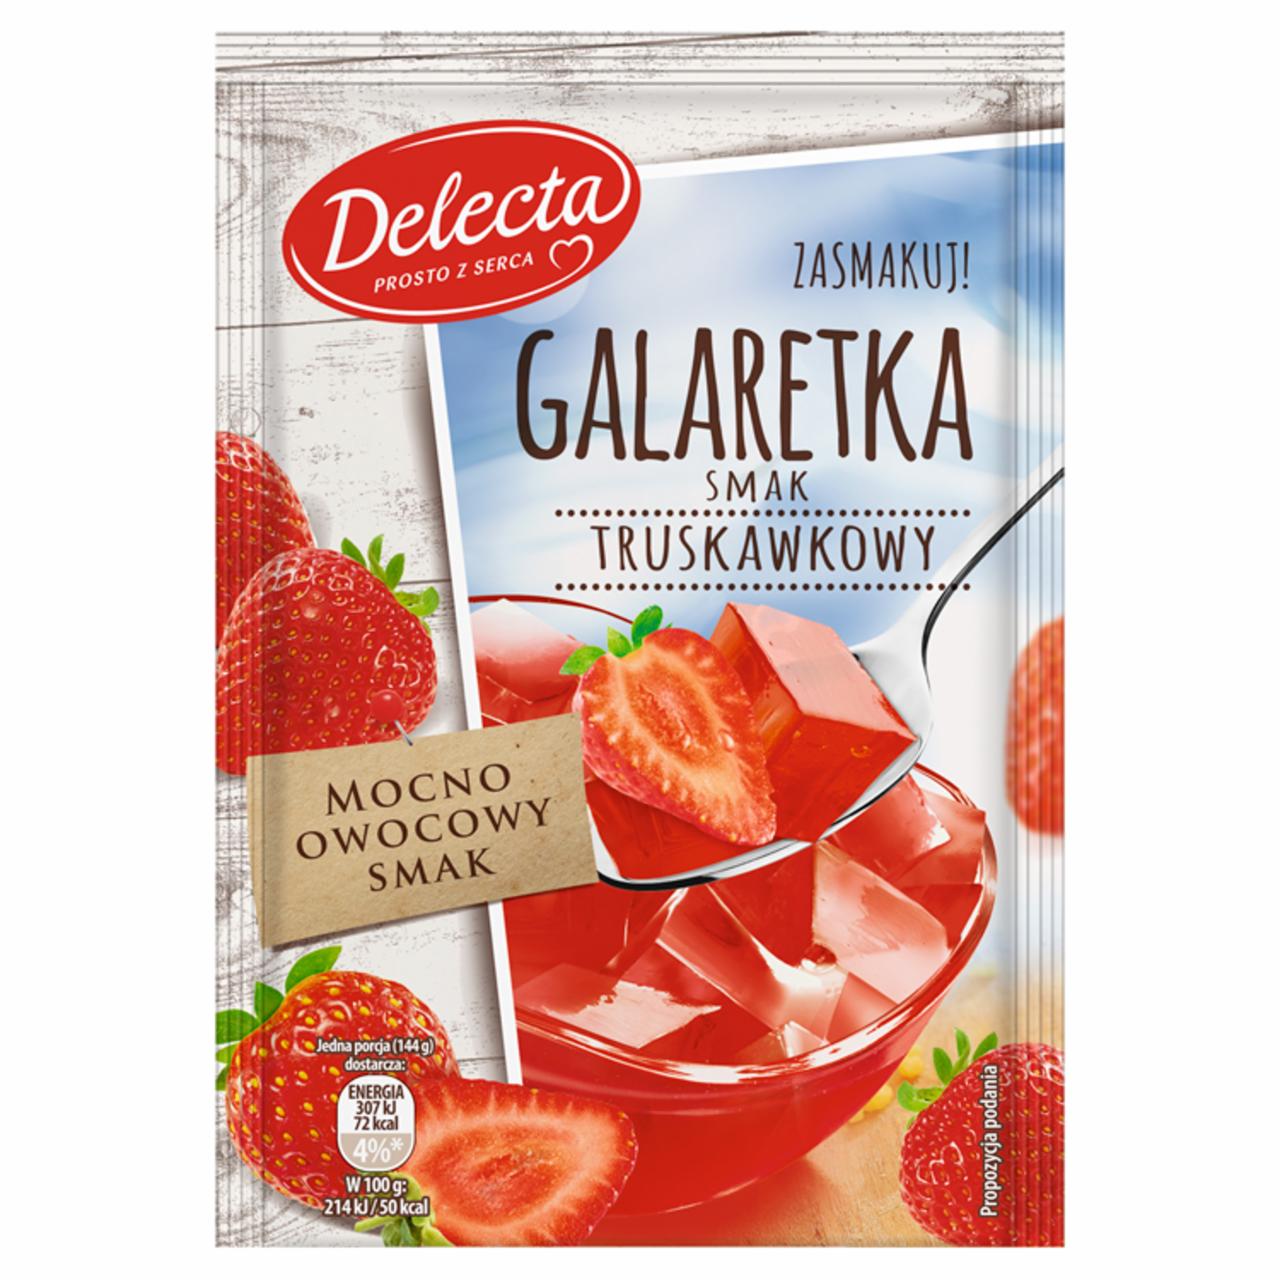 Zdjęcia - Delecta Galaretka smak truskawkowy 75 g